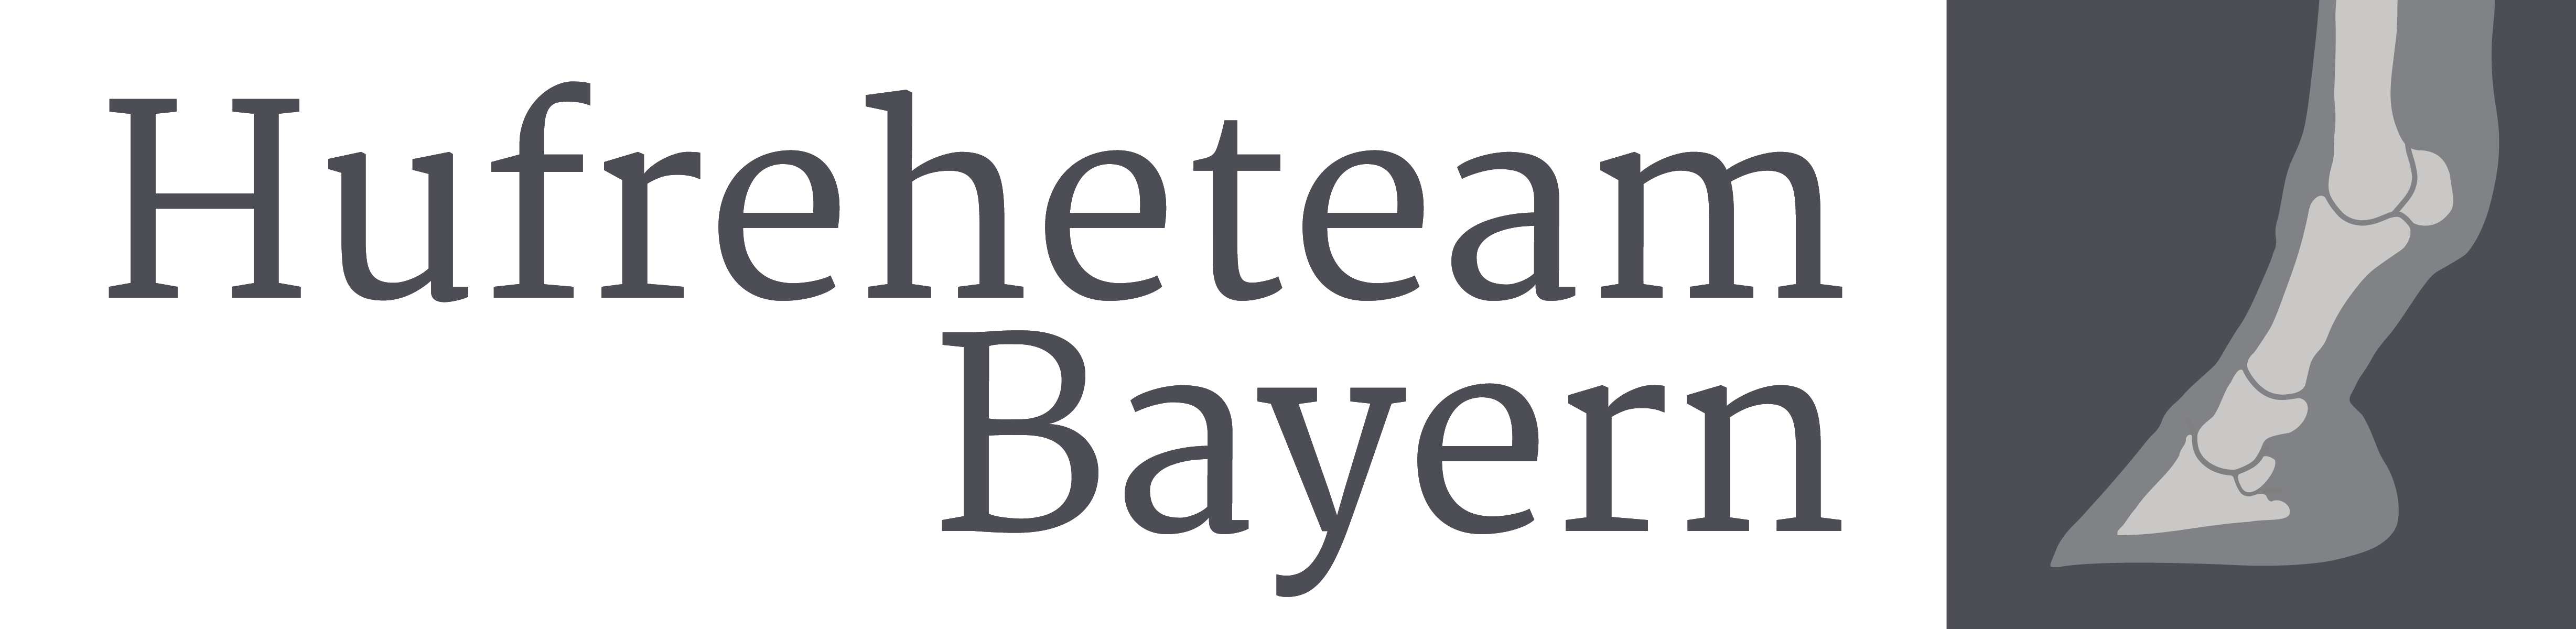 Hufreheteam Bayern - Ihre Experten bei Hufrehe